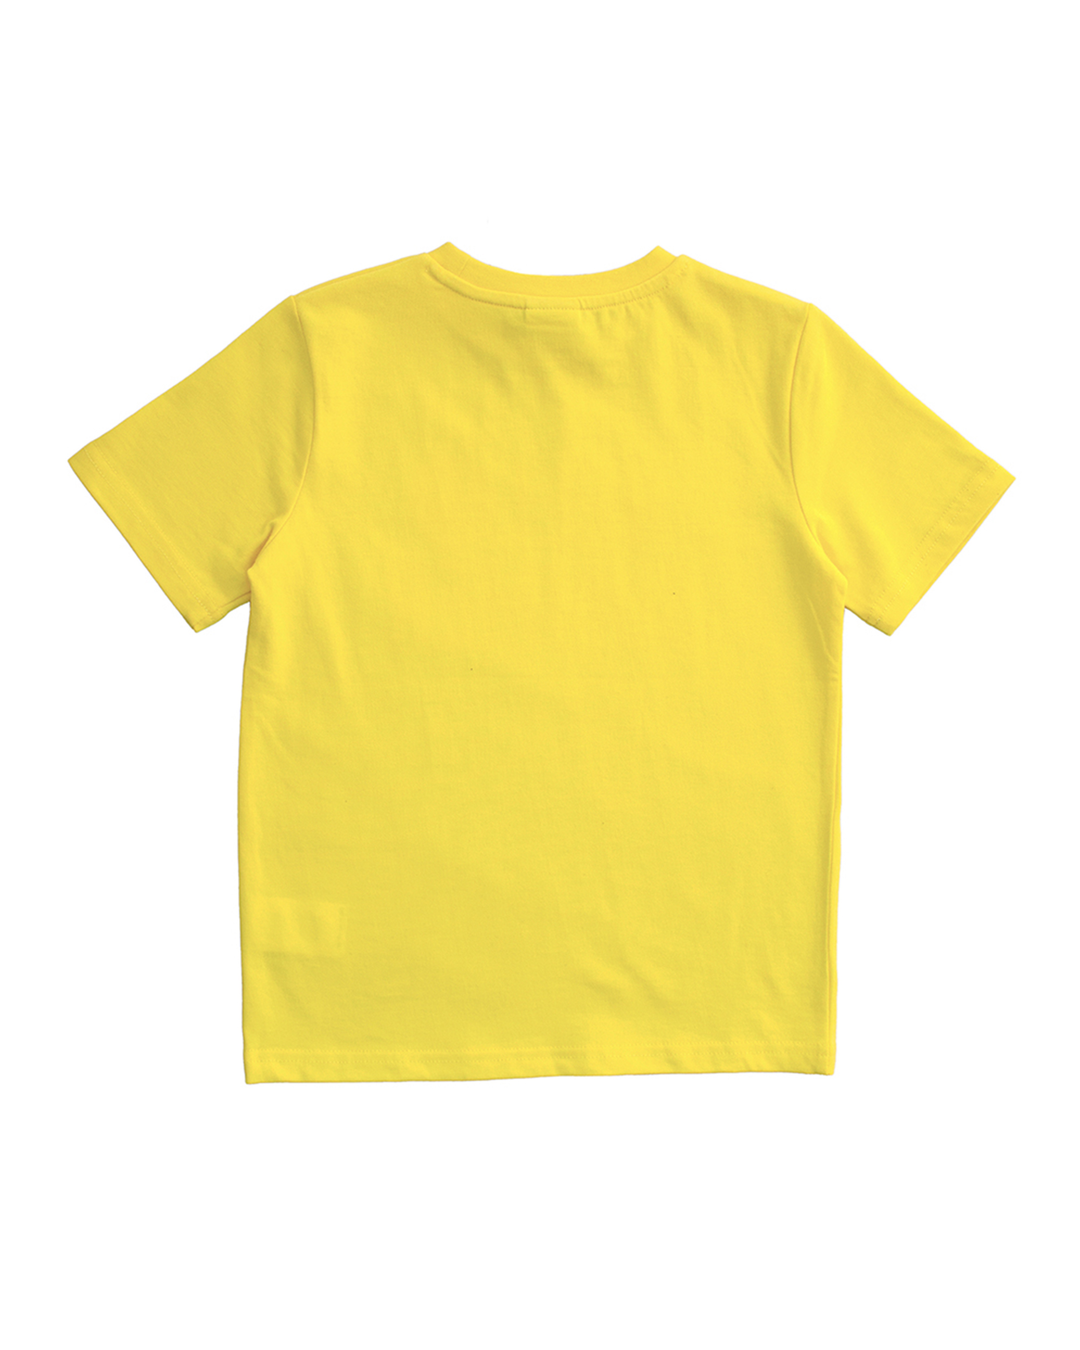 Franela amarilla con gráfico en blanco